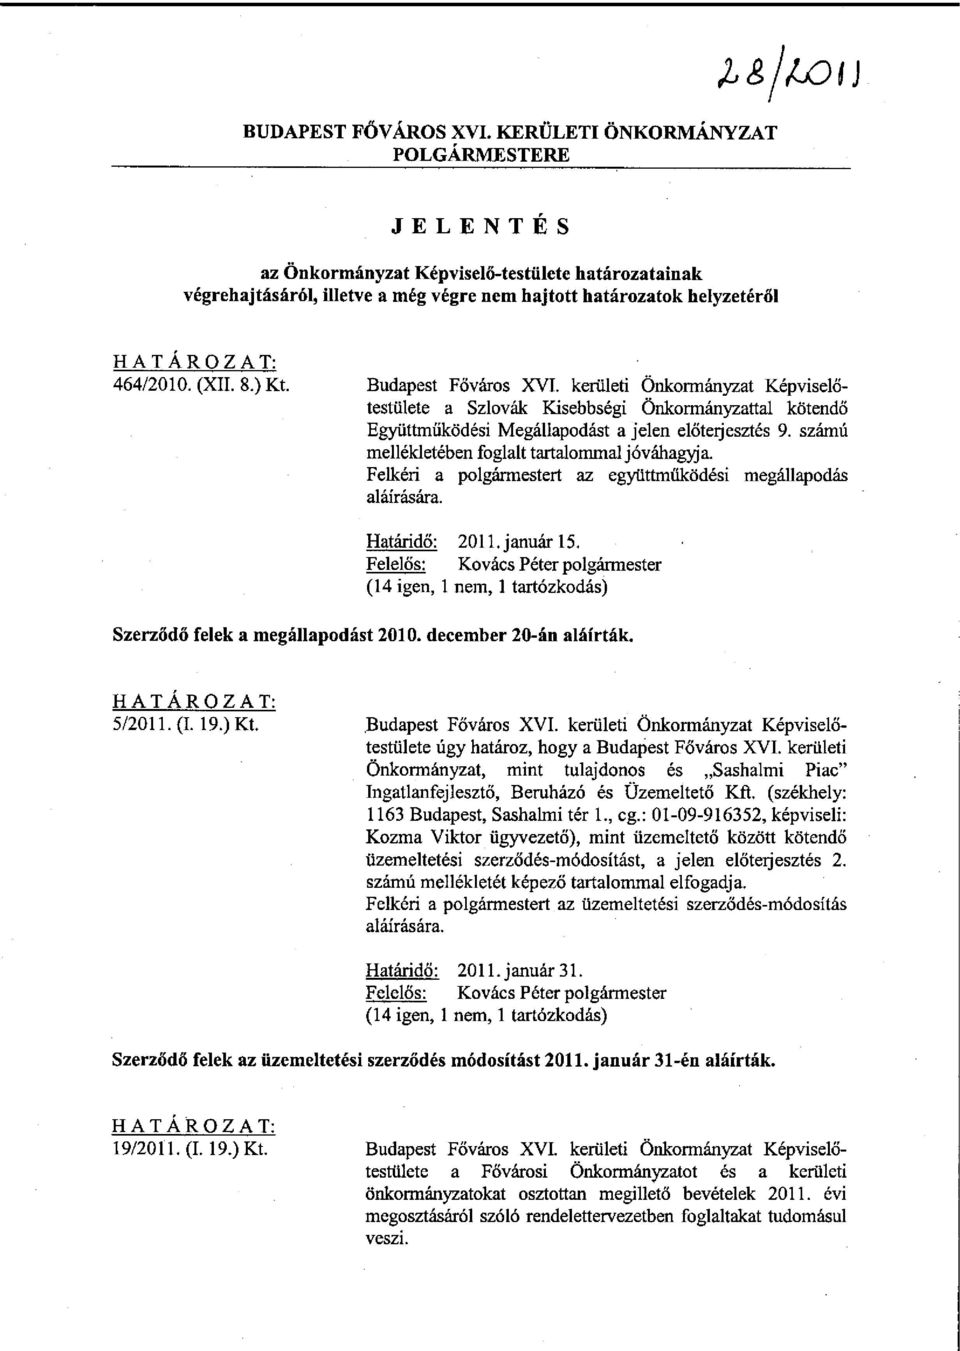 Budapest Főváros XVI. kerületi Önkormányzat Képviselőtestülete a Szlovák Kisebbségi Önkormányzattal kötendő Együttműködési Megállapodást a jelen előterjesztés 9.